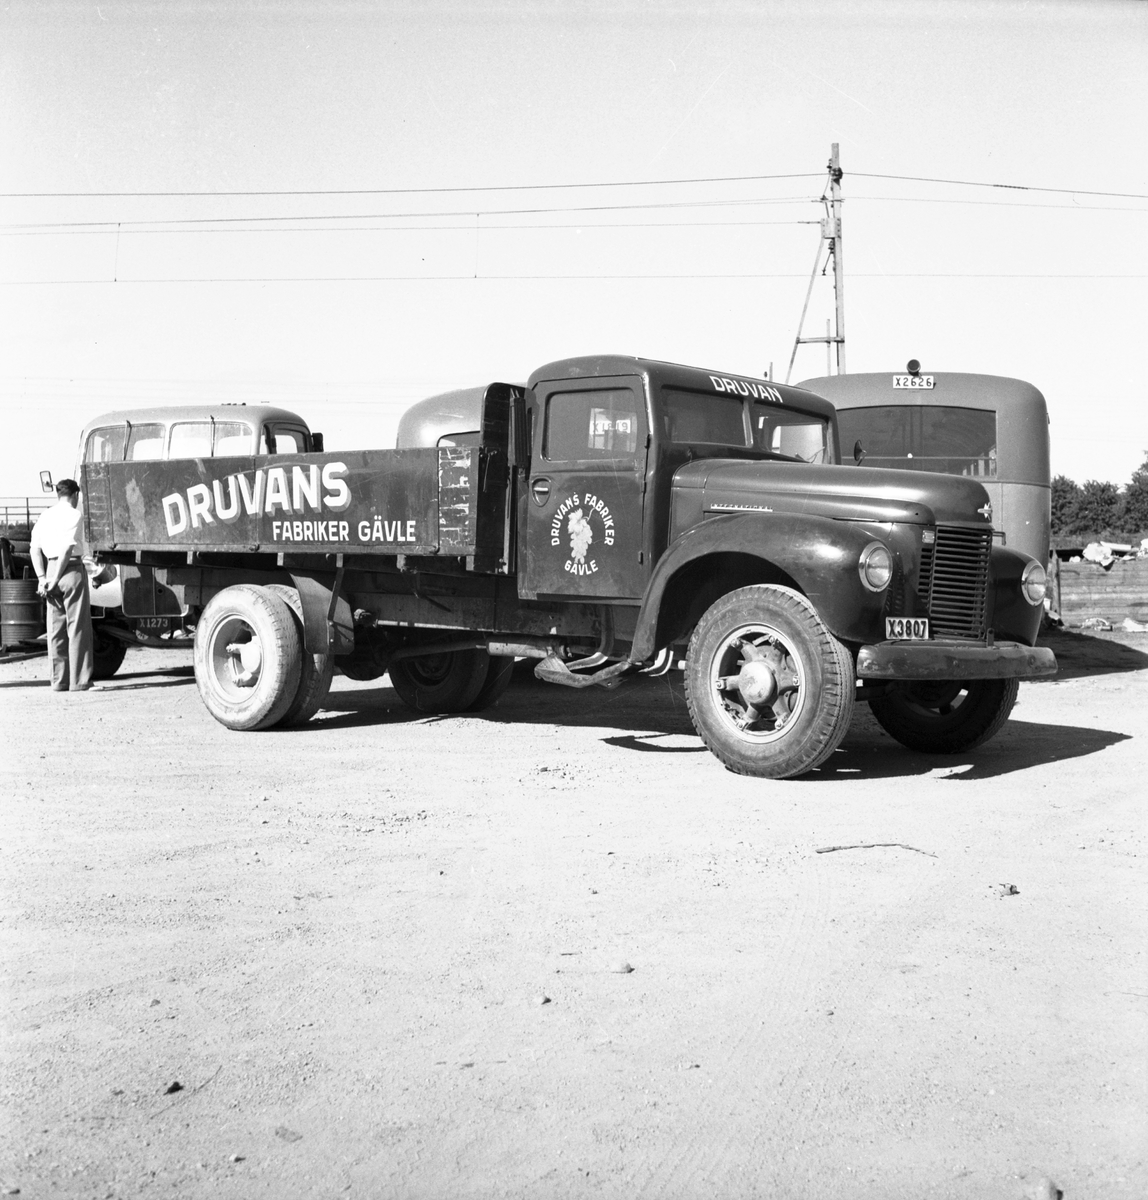 Bil o Traktor, skadad lastbil. Juli 1950.
International, årsmodell 1946-48.